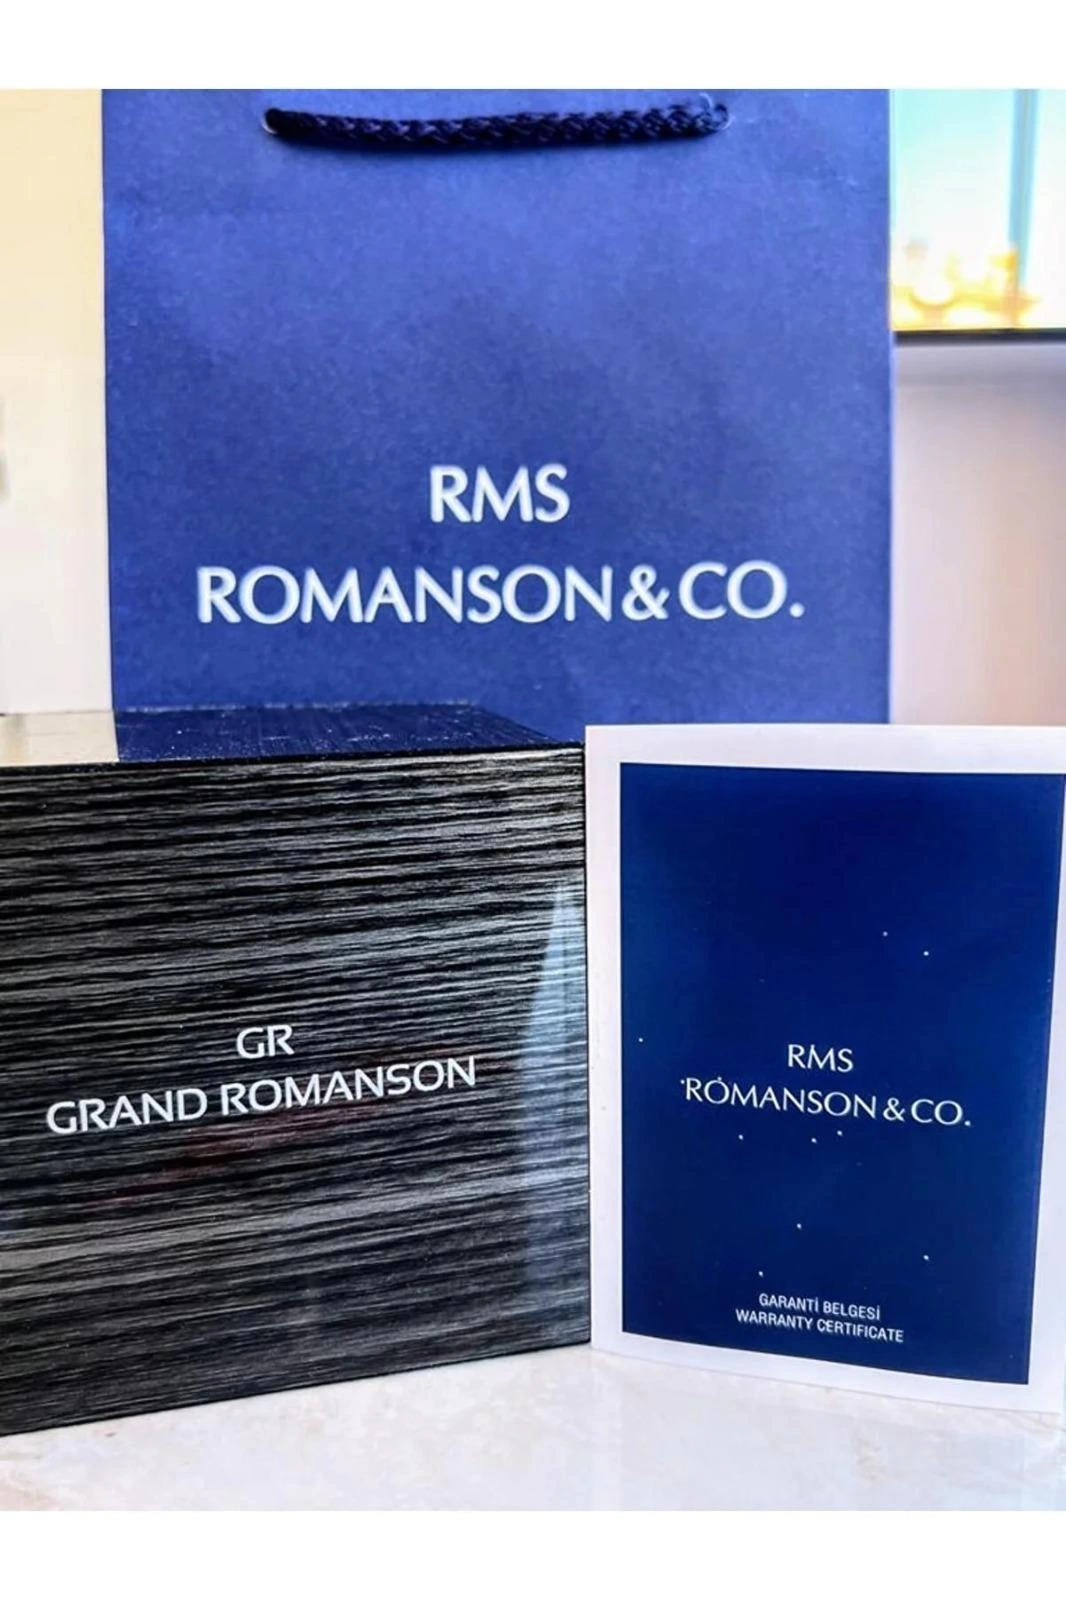 RMS.101 Romanson Özel Seri Takım Elbiseye Özel Tasarım Damat & Nişan Saati  Kararmaz Renk Atmaz